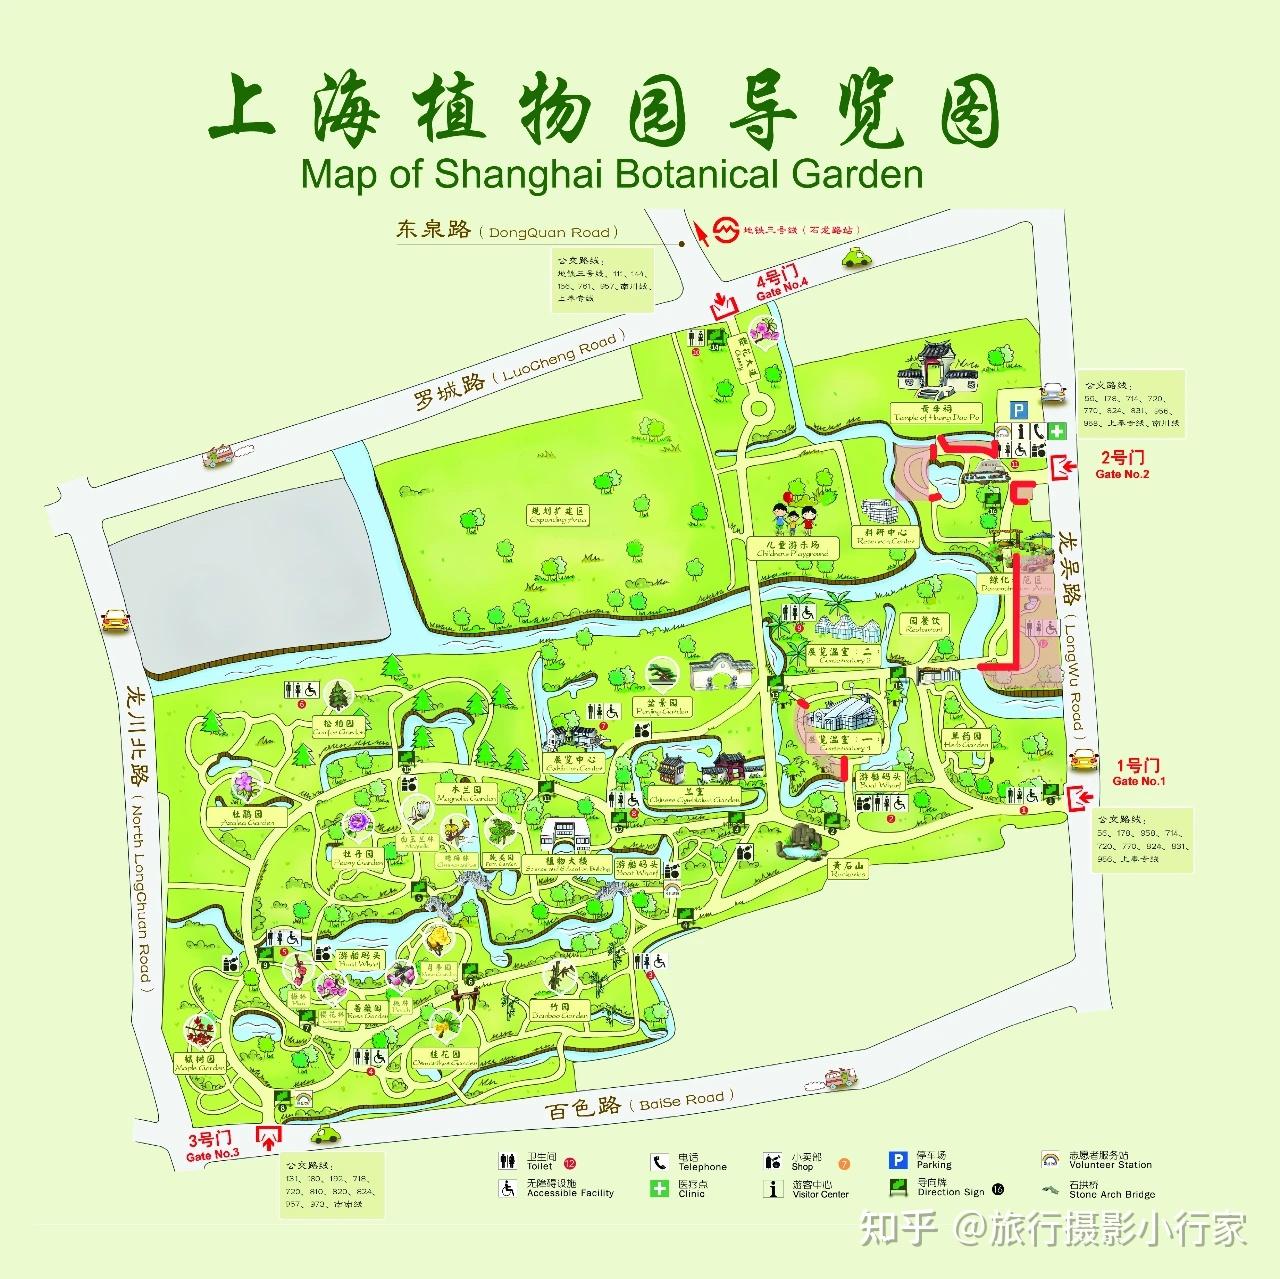 郁金香1,  上海辰山植物园2,  上海植物园3, 大宁郁金香公园4, 静安